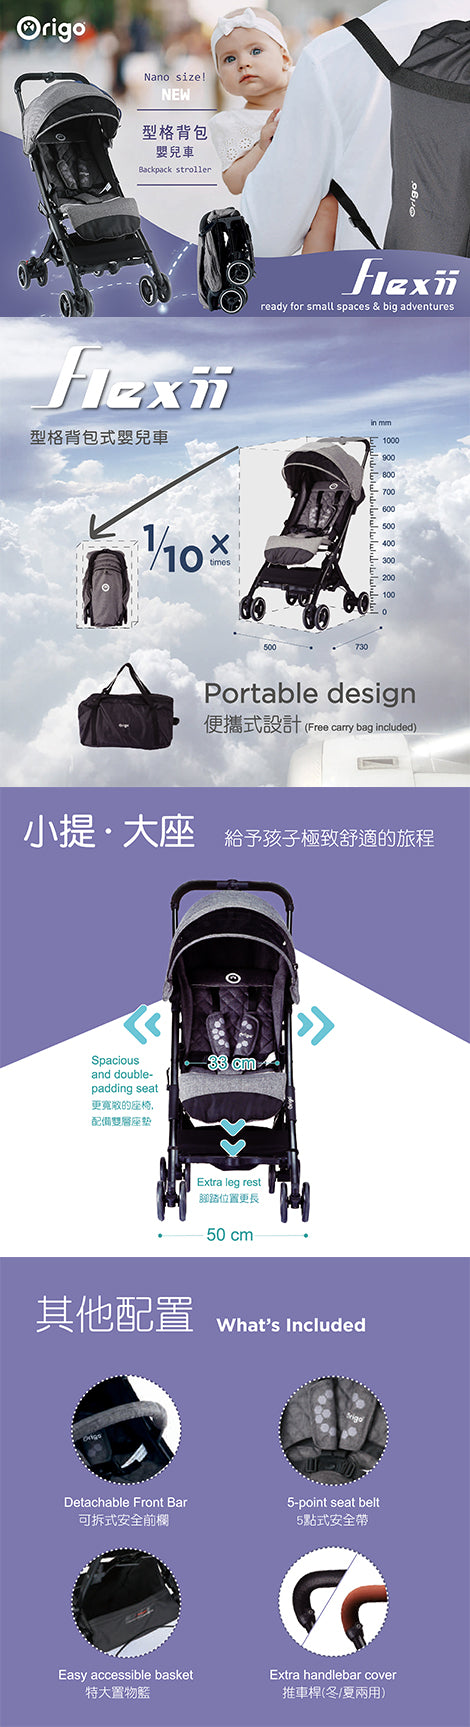 細界級旅遊伴旅登場 全新嬰兒車flexii 型格背包式嬰兒車 0 3 Baby Collection